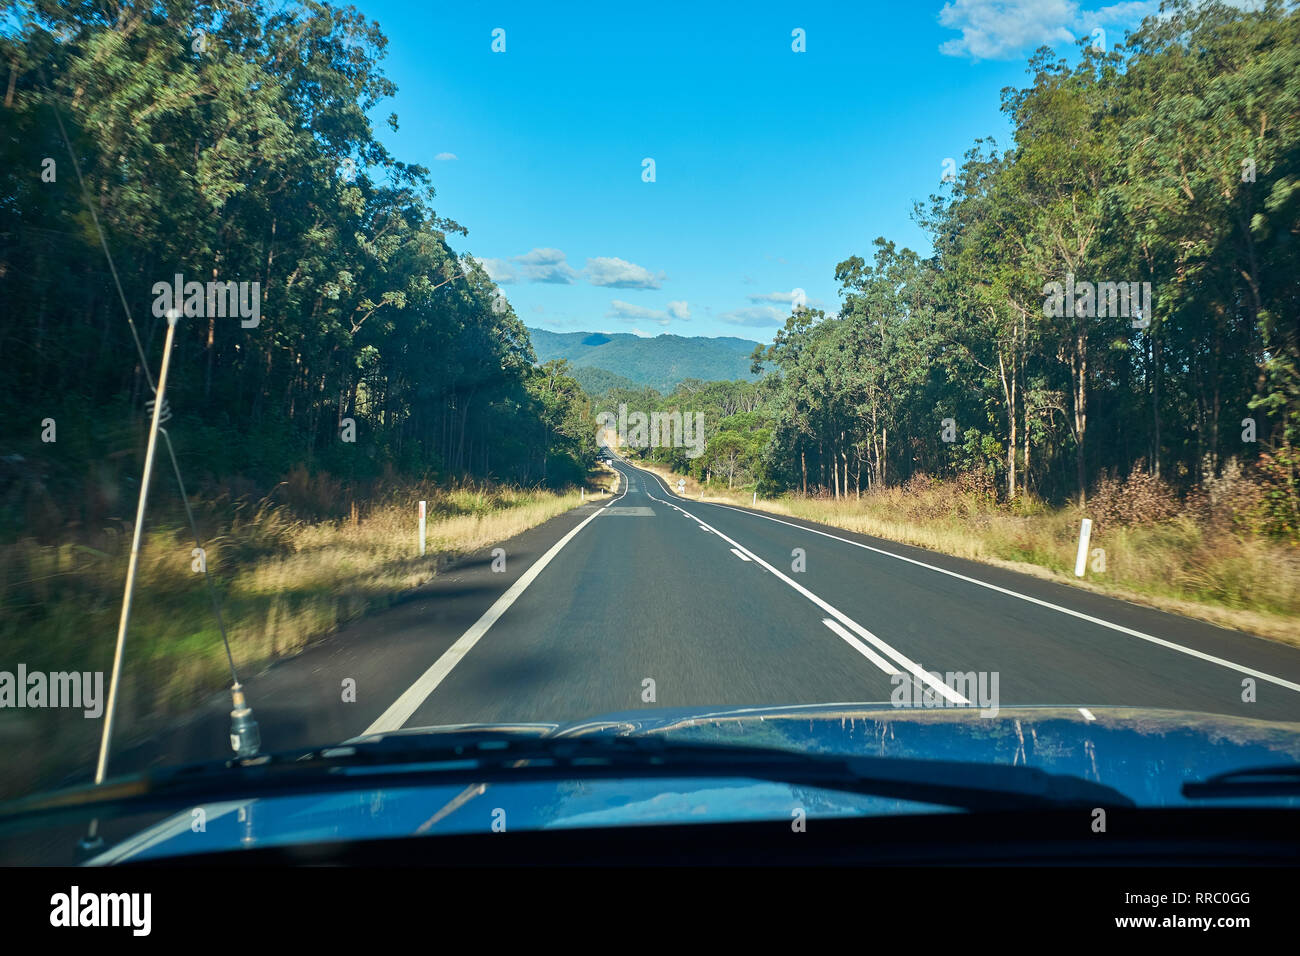 Ansicht von innen ein Auto entlang einer Straße Reisen mit Gummi Bäume auf beiden Seiten im australischen Outback auf einem hellen Tag mit kein anderer Datenverkehr Insight Stockfoto